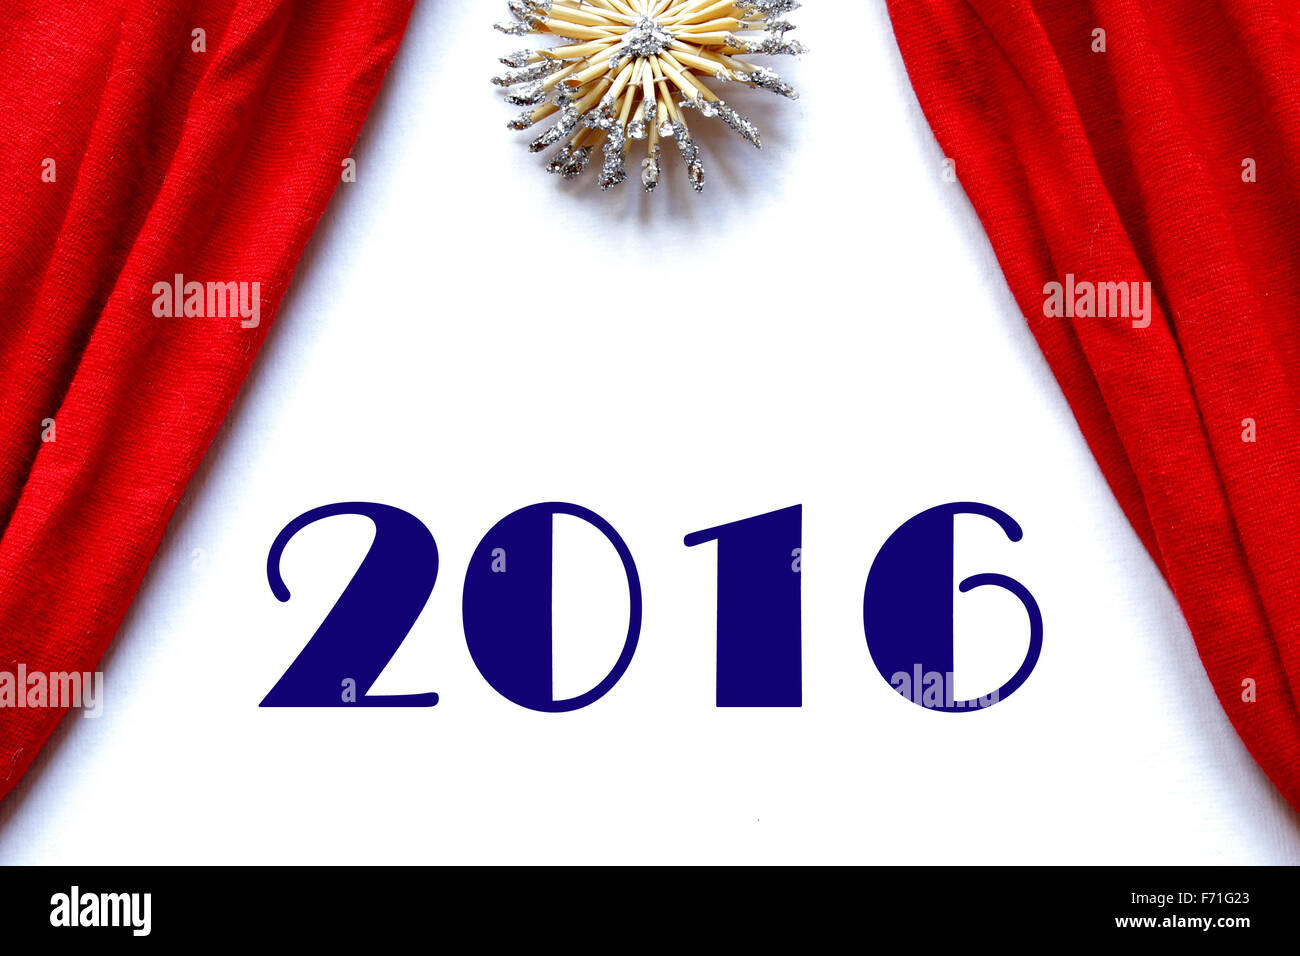 Scène de théâtre des rideaux rouges fond blanc bonne année 2016 l'étoile polaire au-dessus Banque D'Images